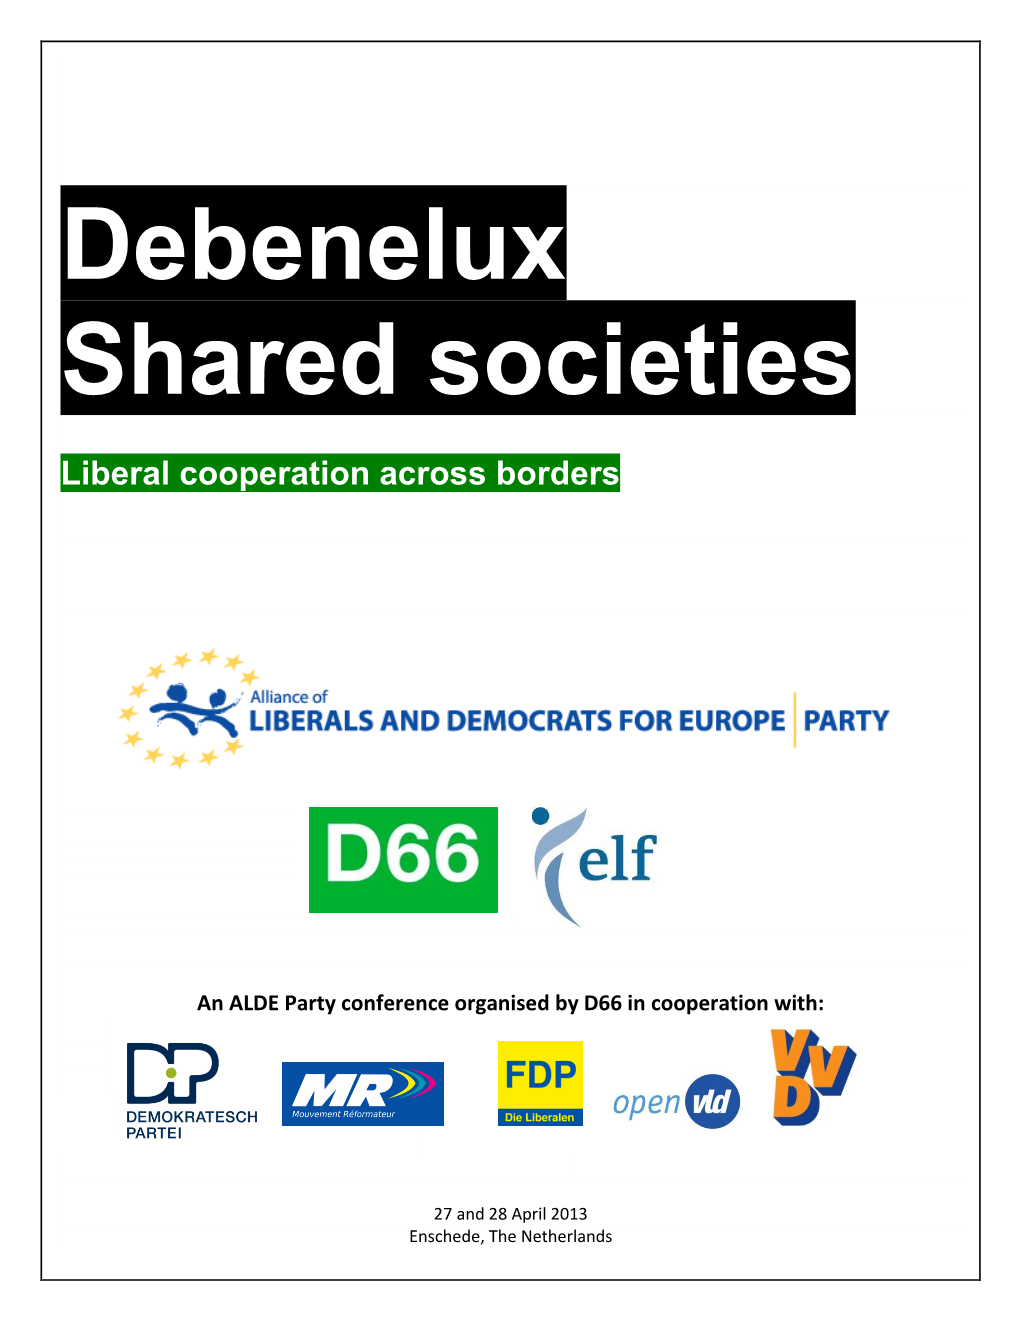 Debenelux Shared Societies